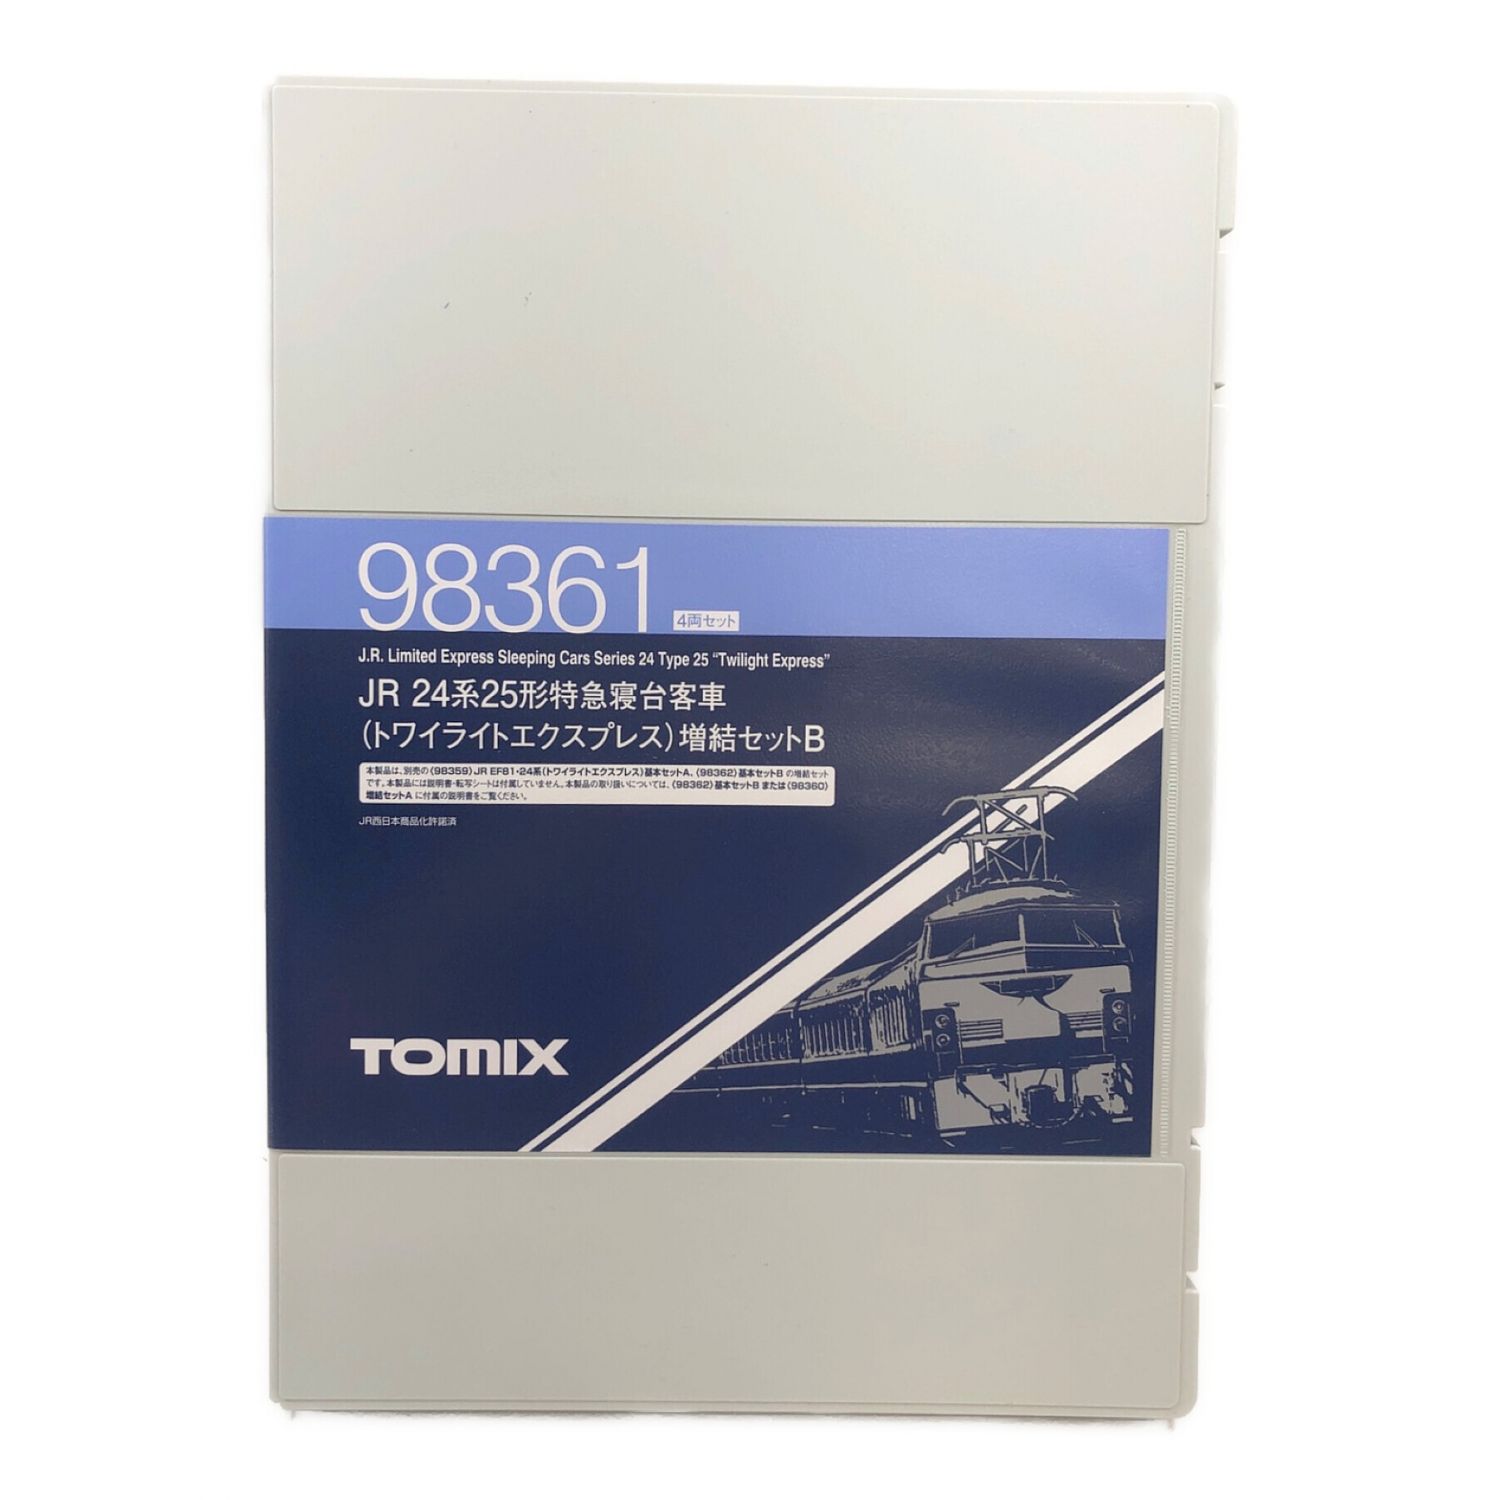 TOMIX (トミックス) Nゲージ トワイライトエクスプレス JR 24系25形